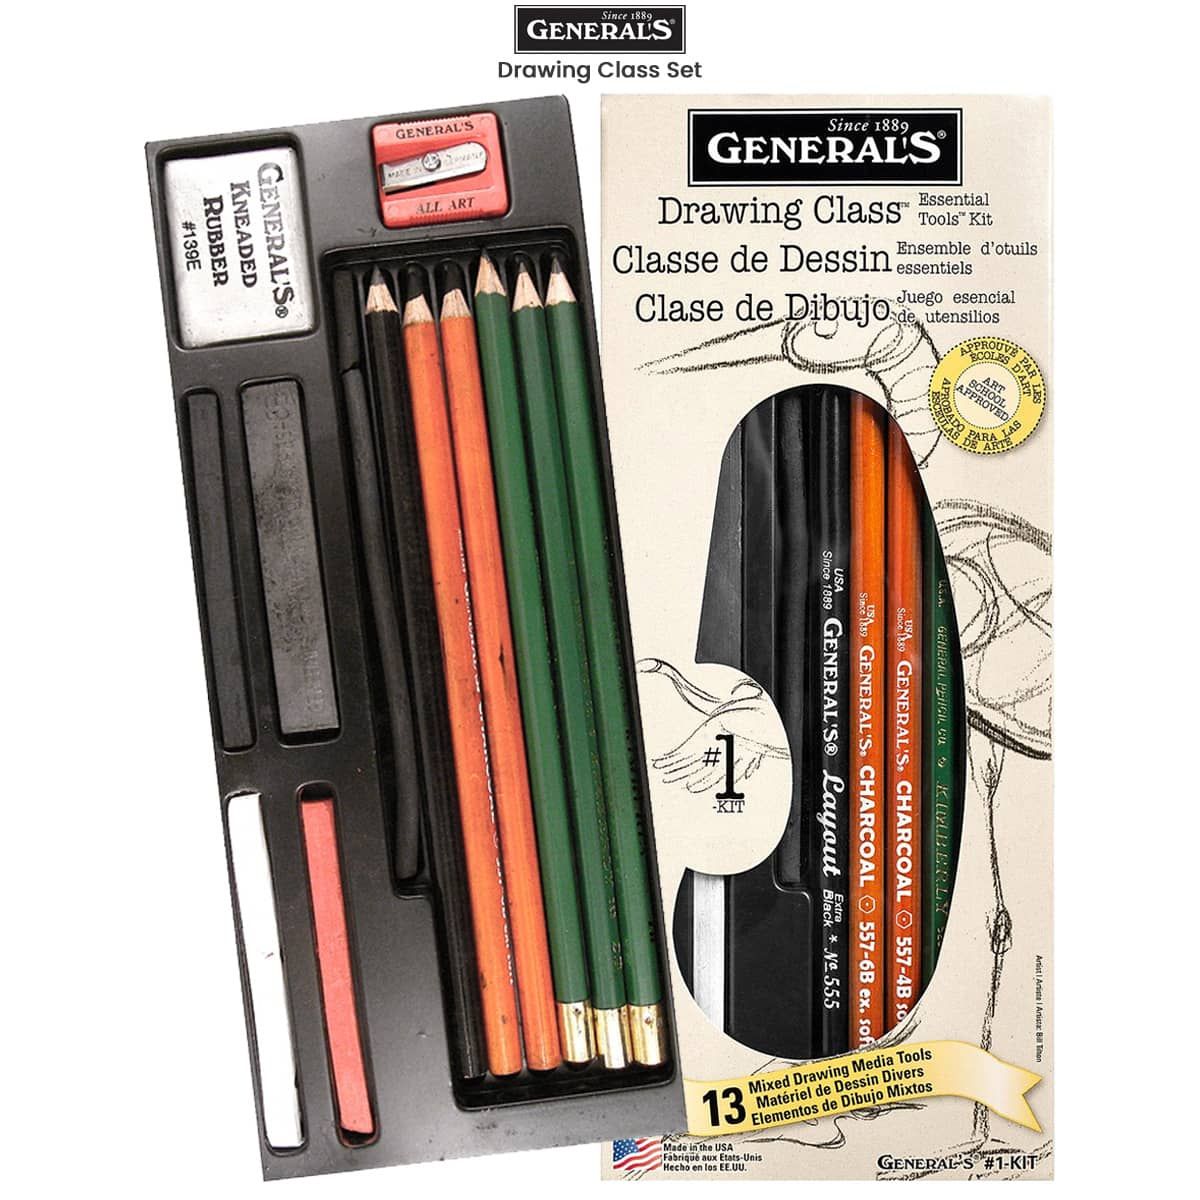 General's 557 Series Charcoal Pencil HB Charcoal Pencil Generals Hb